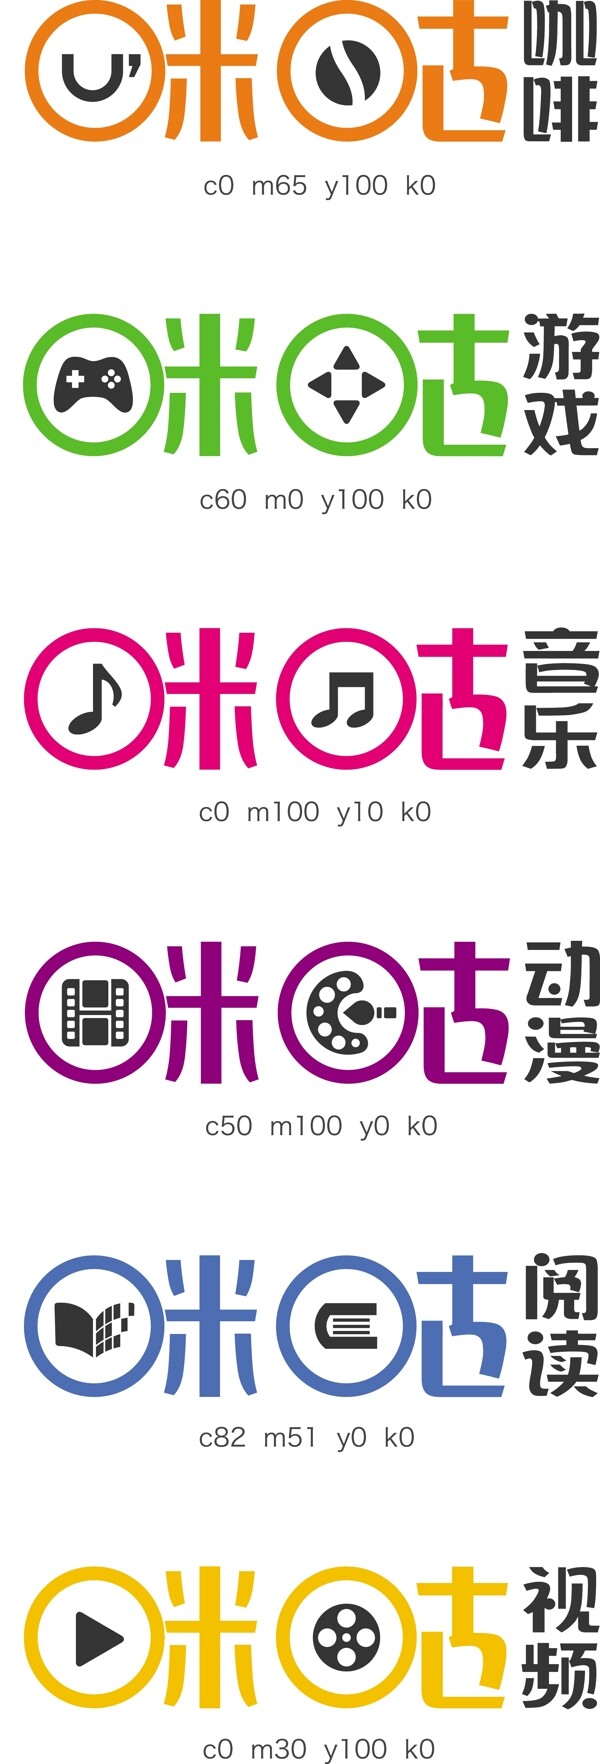 咪咕子产品logo合集